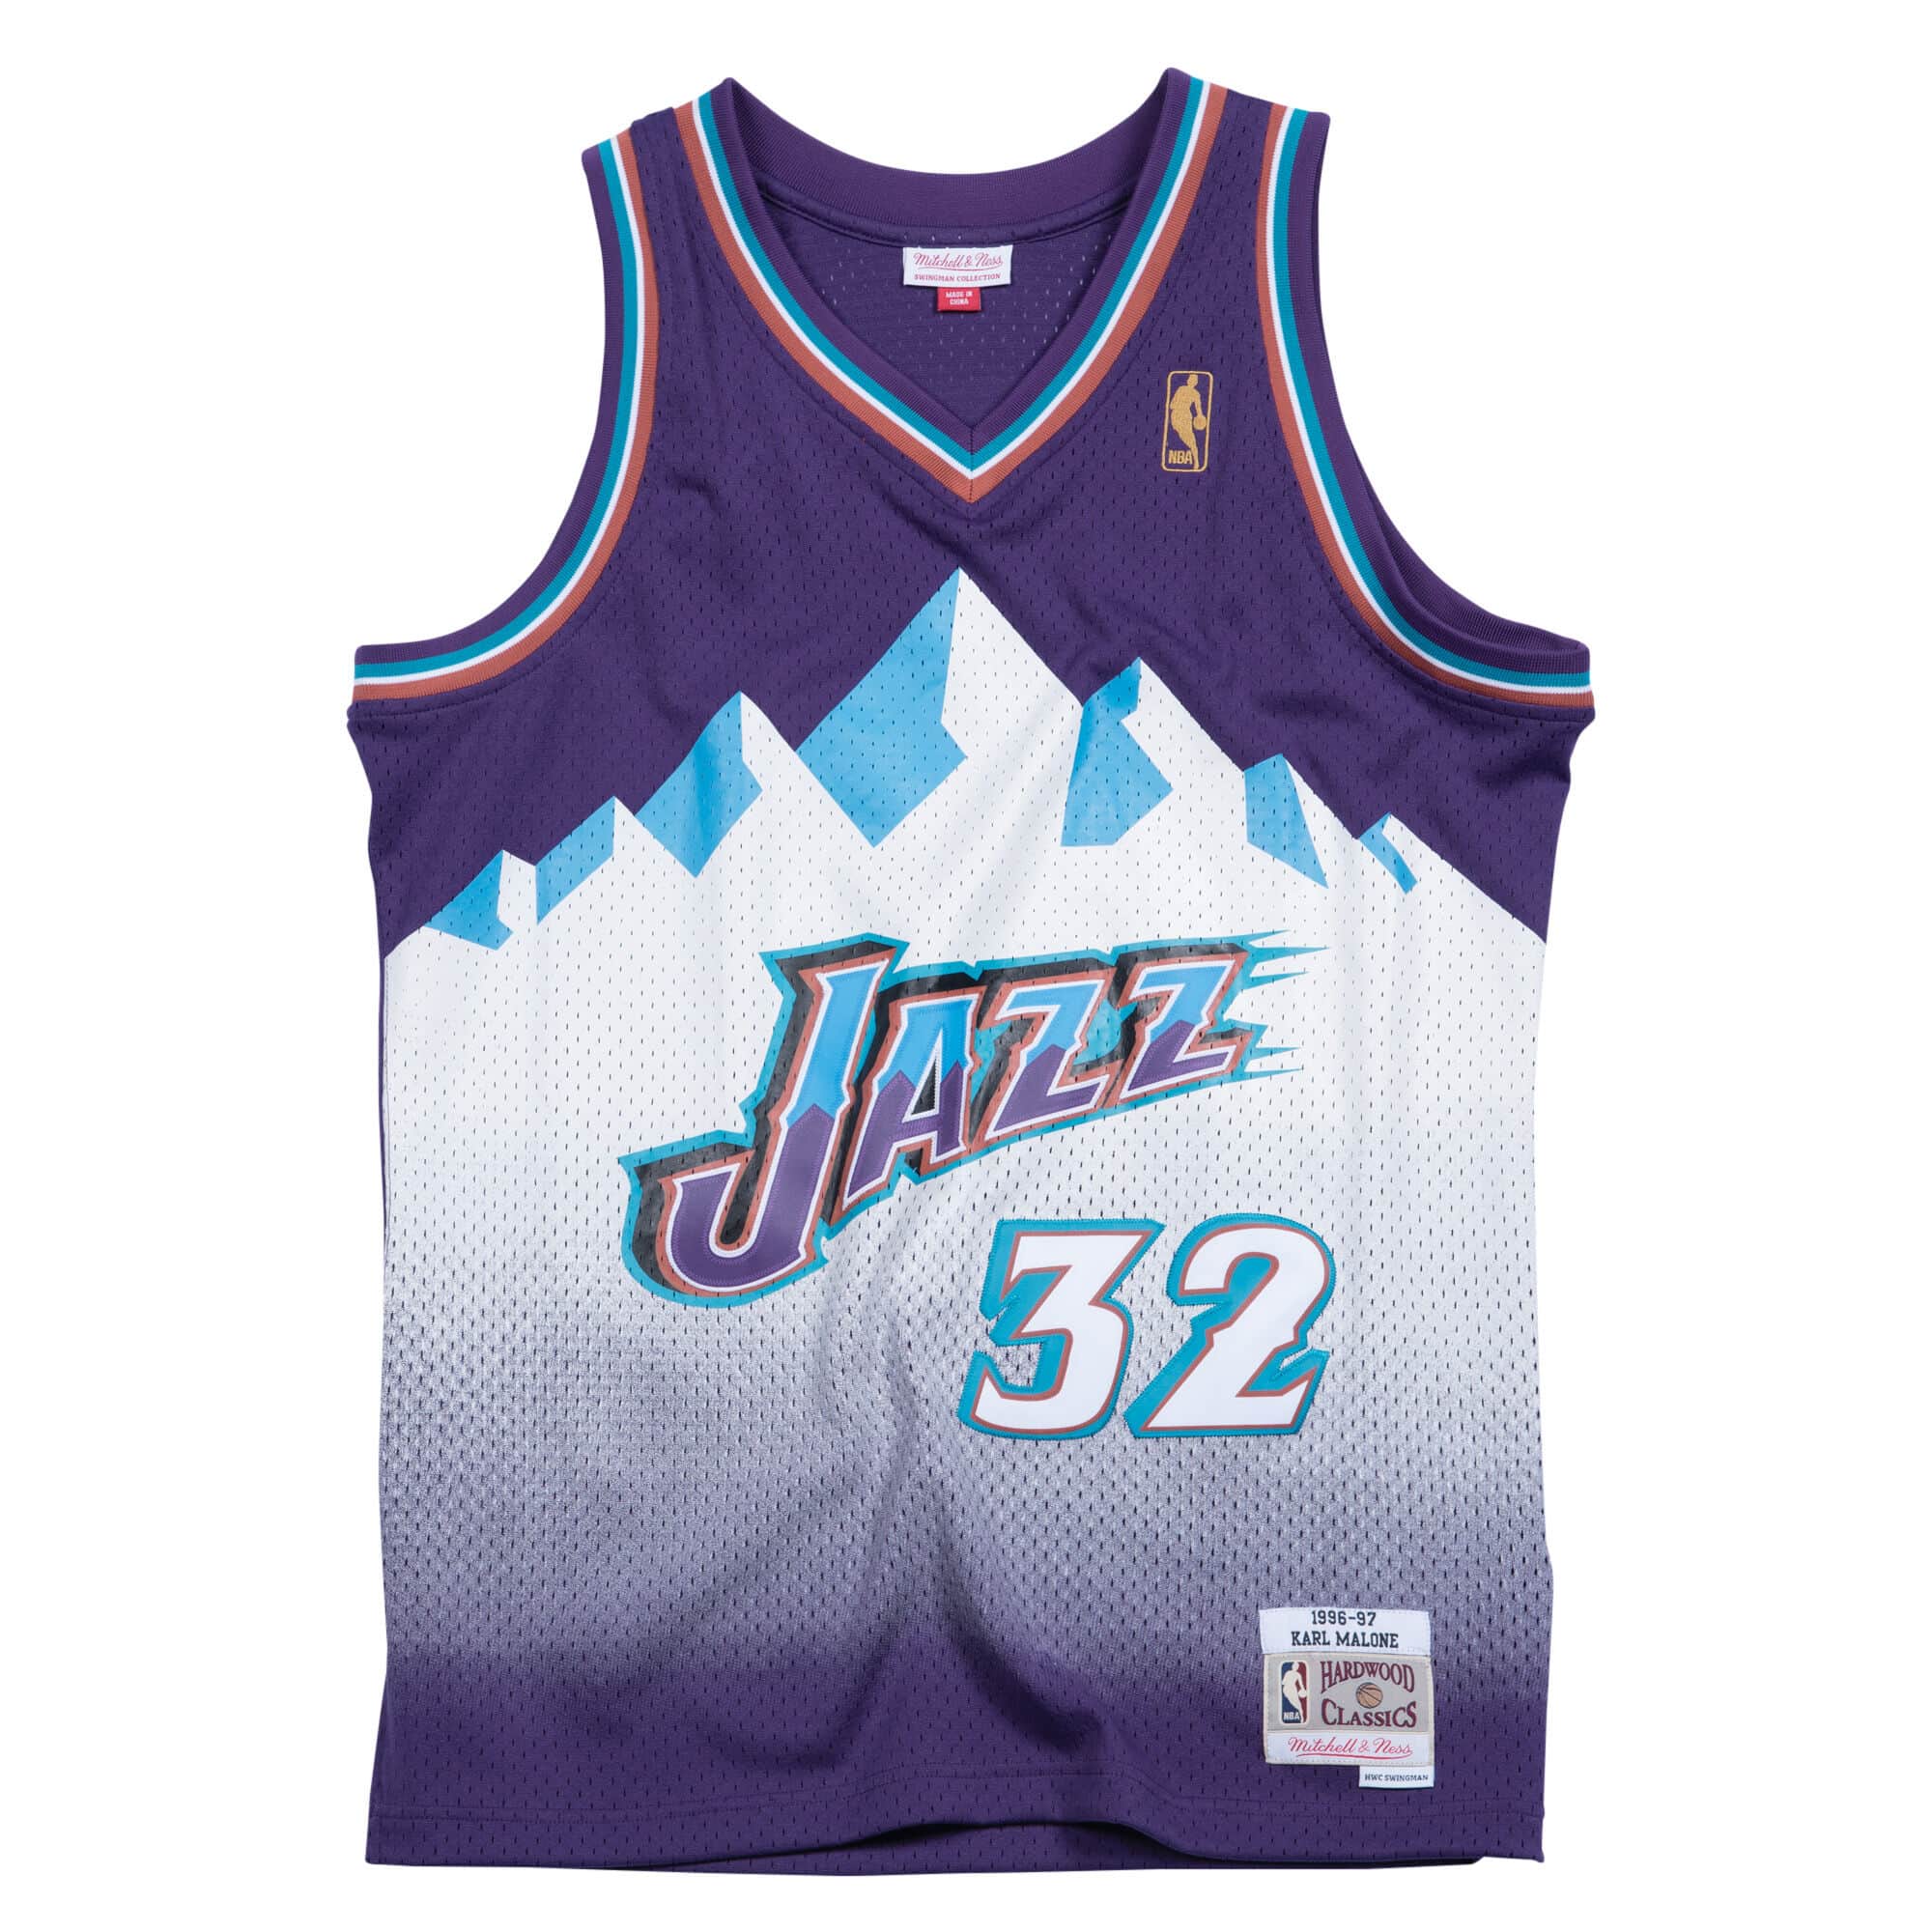 Karl Malone Utah Jazz Hardwood Classics NBA Jersey Men's Size M